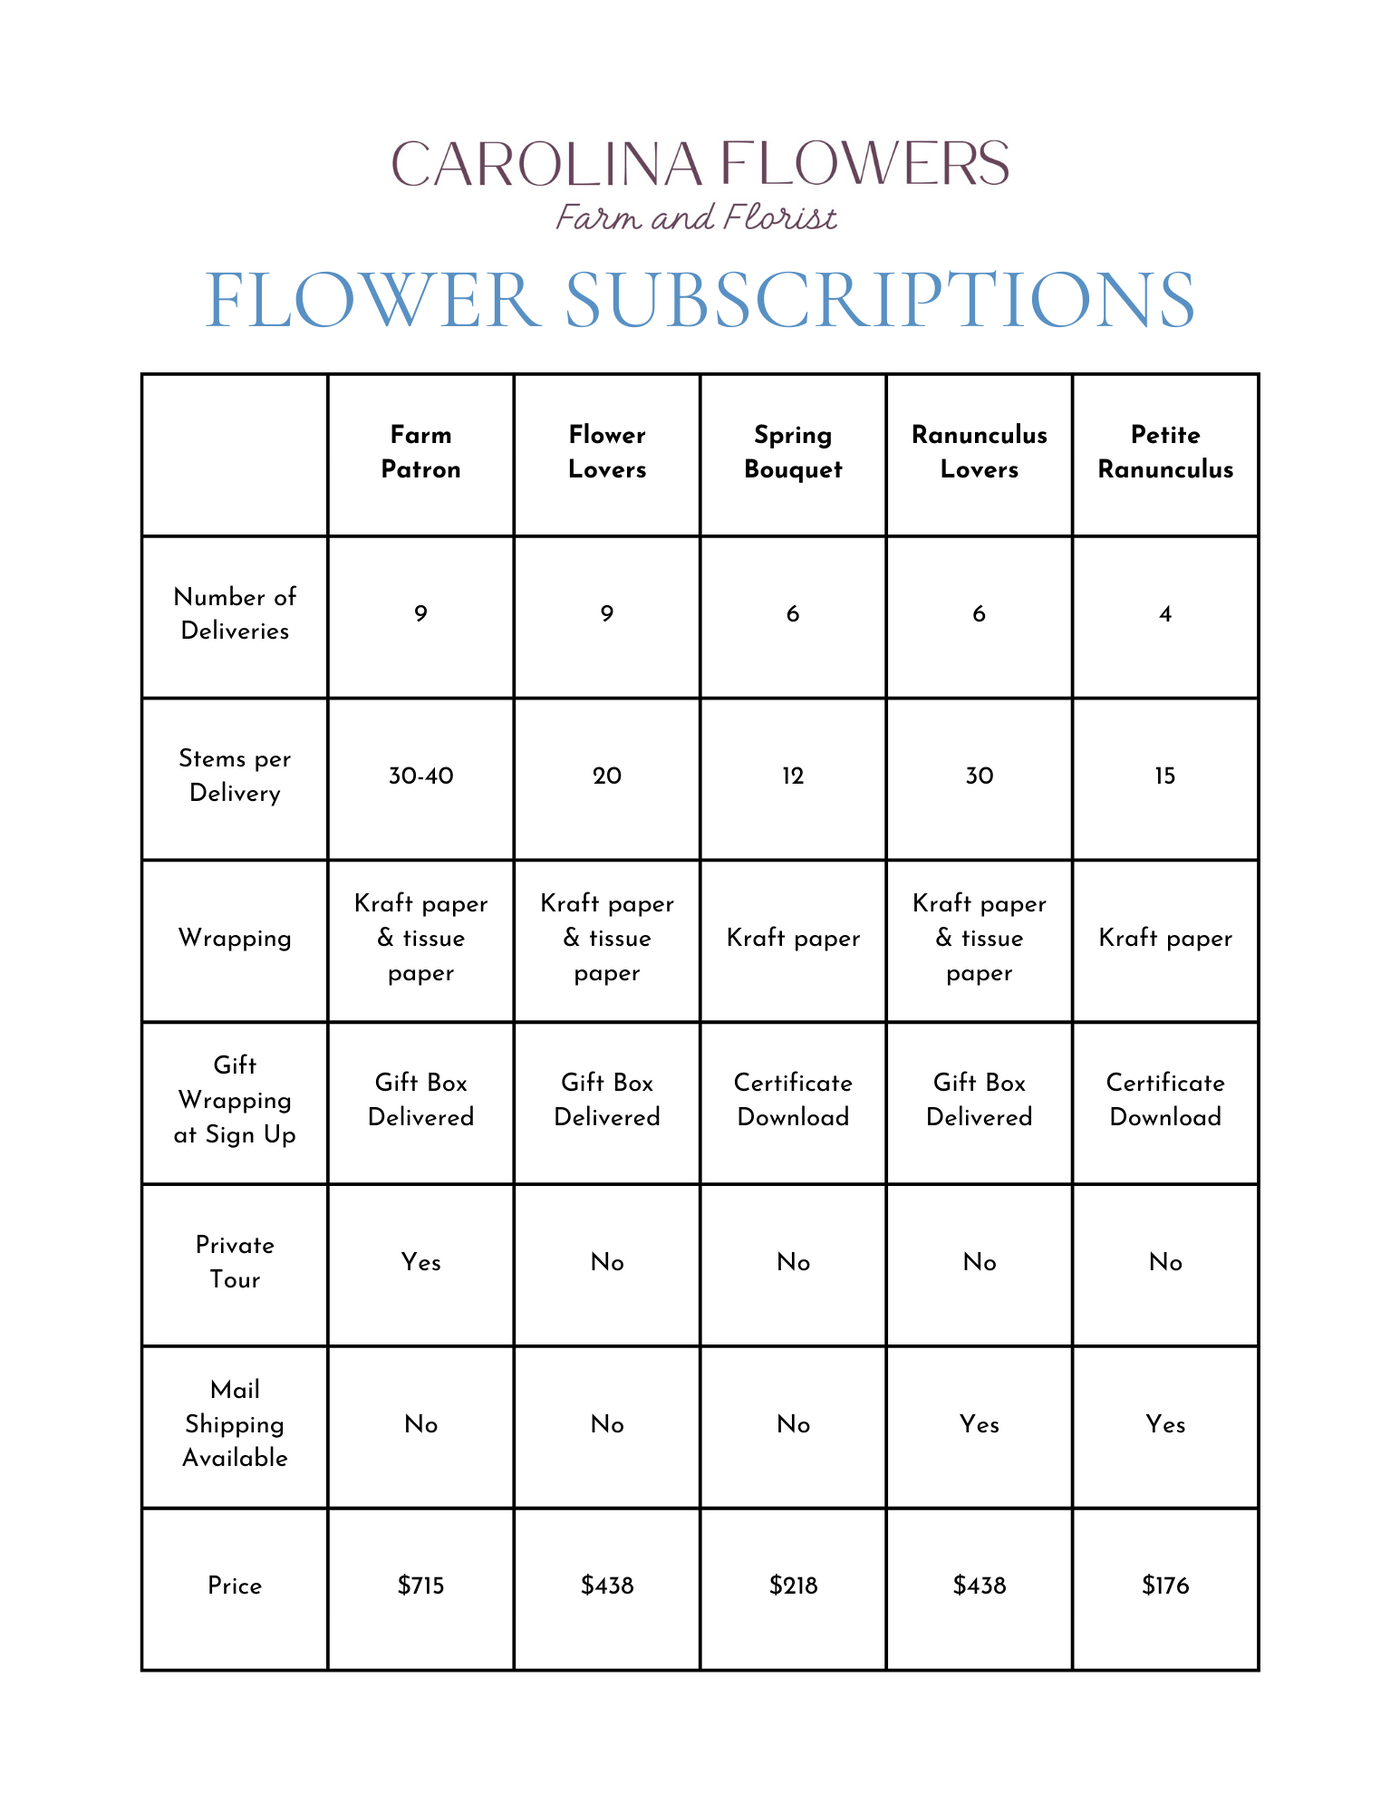 Farm Patron Monthly Subscription (9 Lush Bouquets + Private Tour)